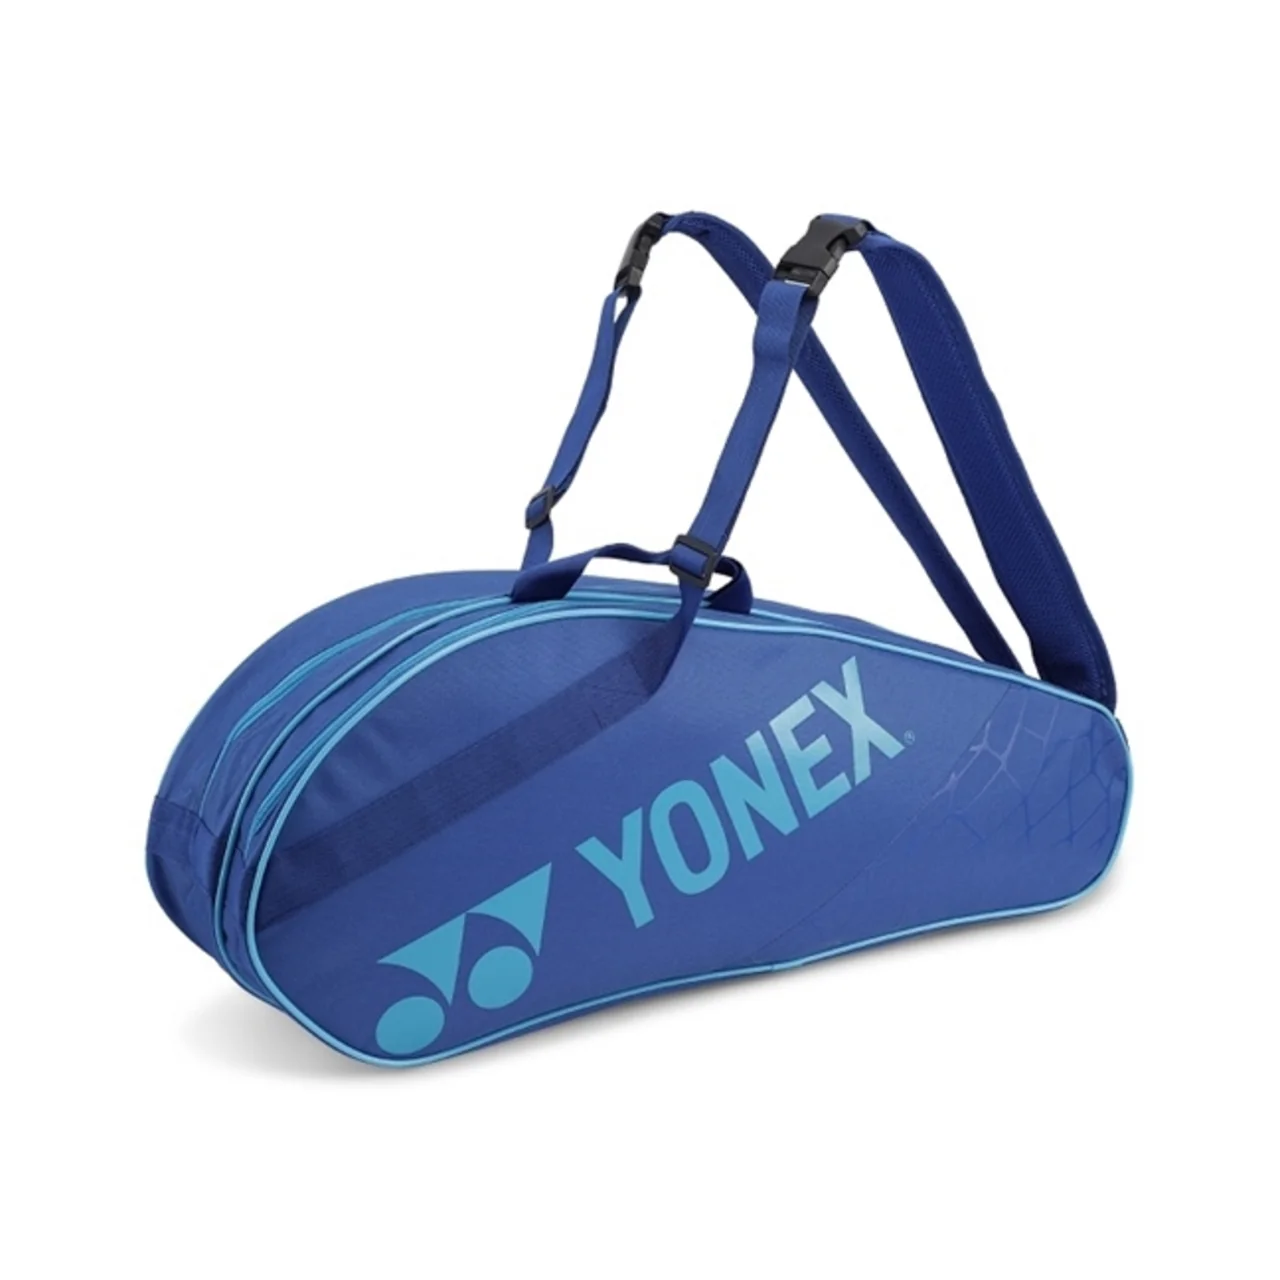 Yonex Bag 202136sc x6 Blue